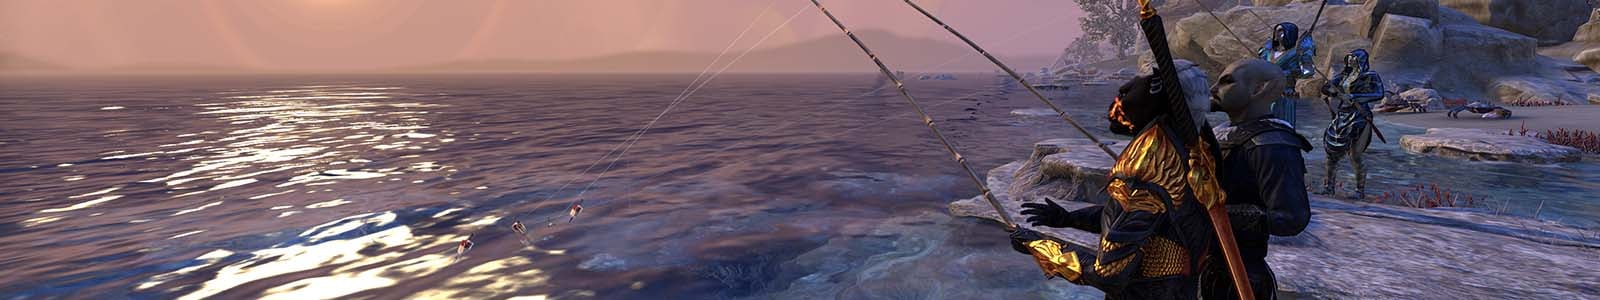 Fishing Guide - Elder Scrolls Online